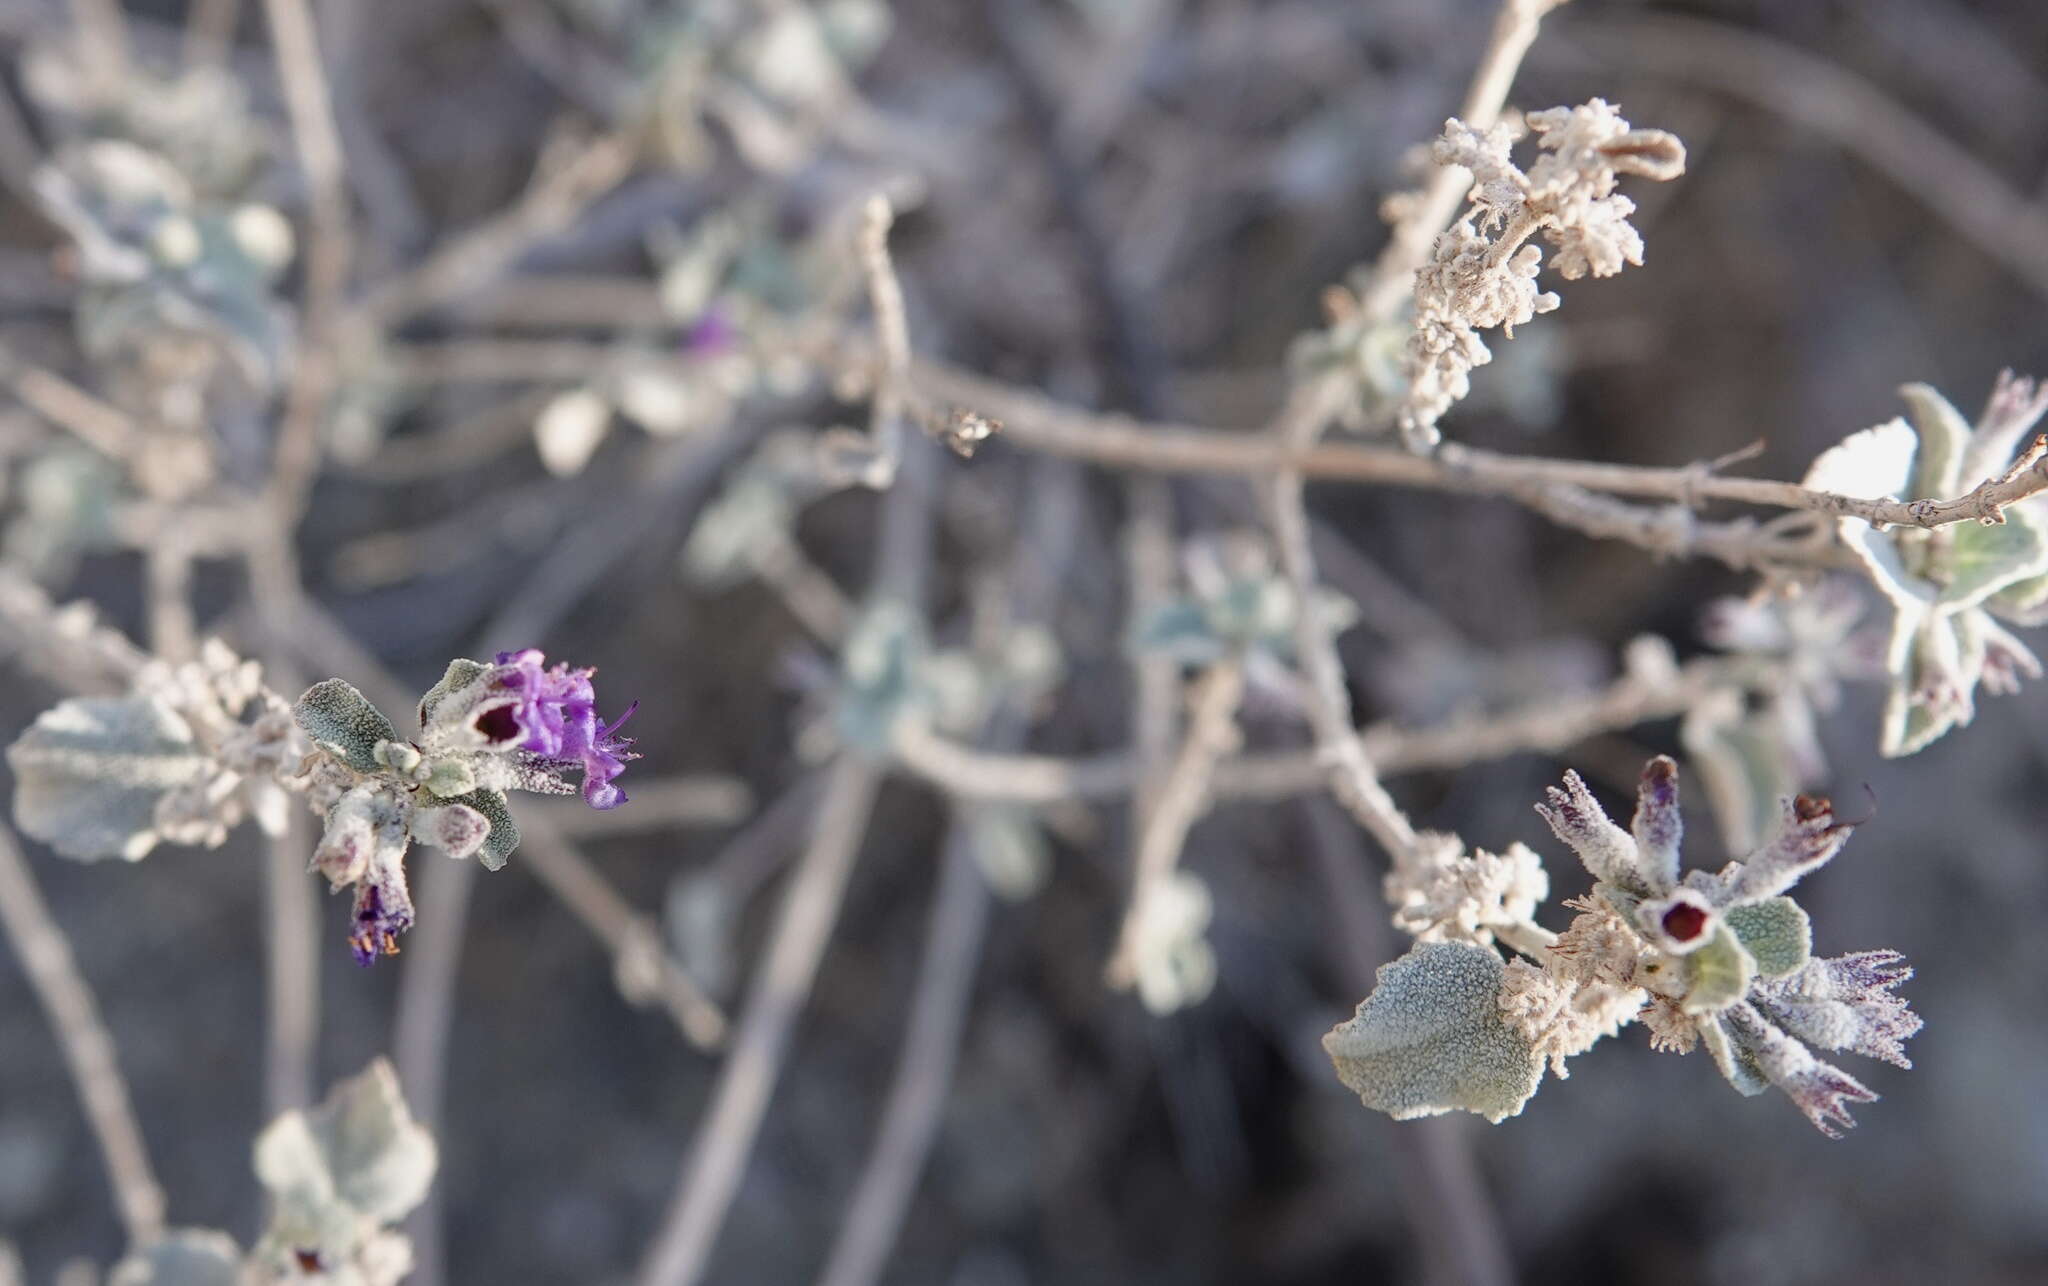 Image of desert lavender